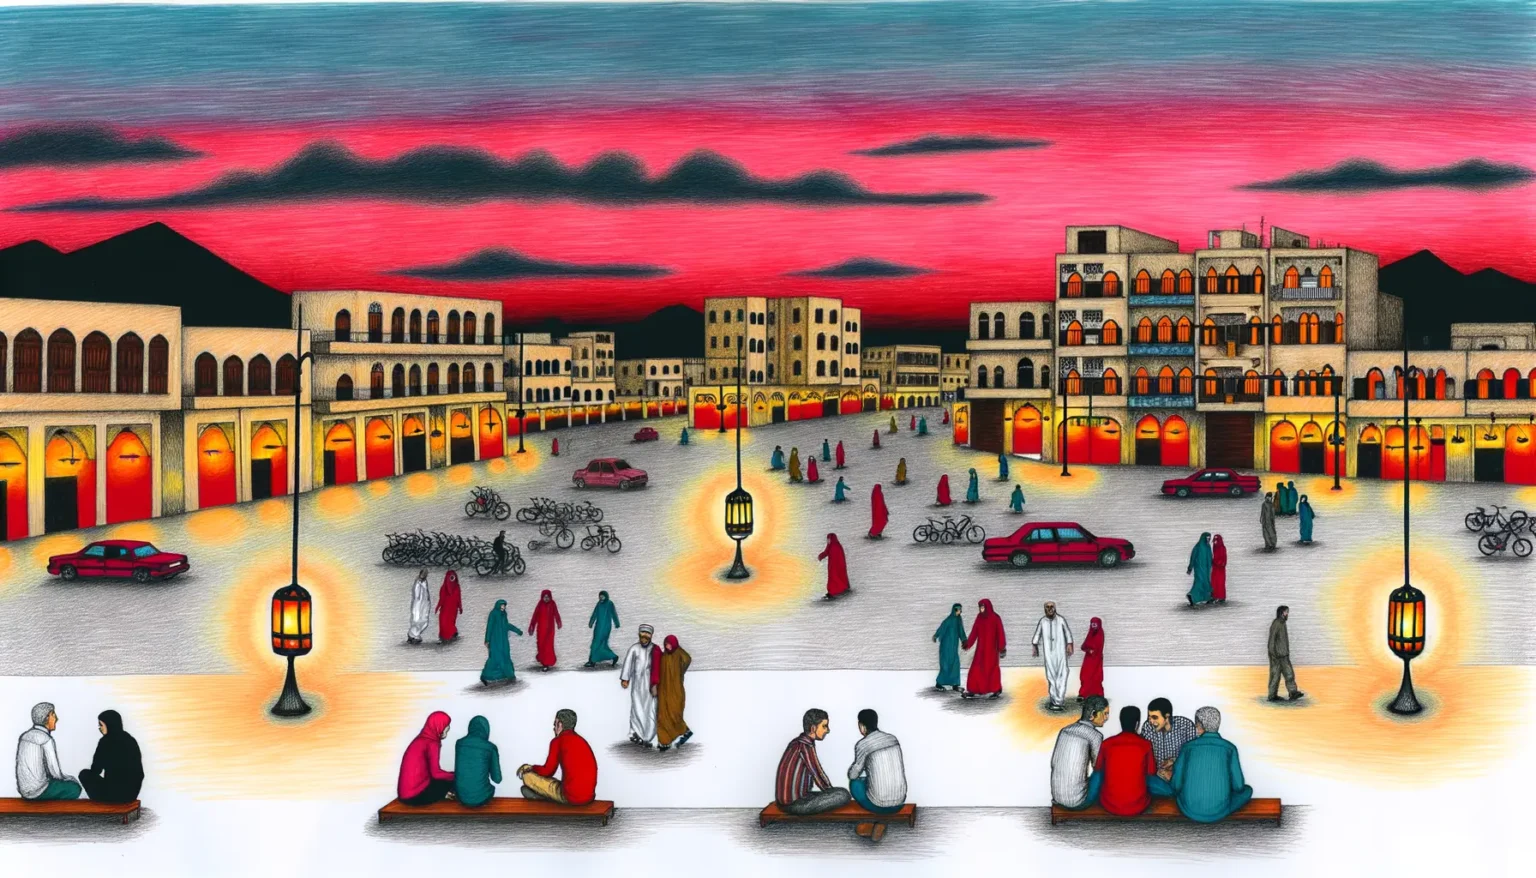 Illustrierte Szene eines belebten Marktplatzes bei Dämmerung mit Personen in traditioneller Kleidung, die sich unterhalten, spazieren gehen und auf Bänken sitzen. Es gibt Fahrräder, Autos, beleuchtete Laternen und Gebäude mit Bögen, die in warmes Licht getaucht sind, unter einem Himmel mit roten und blauen Farbtönen.